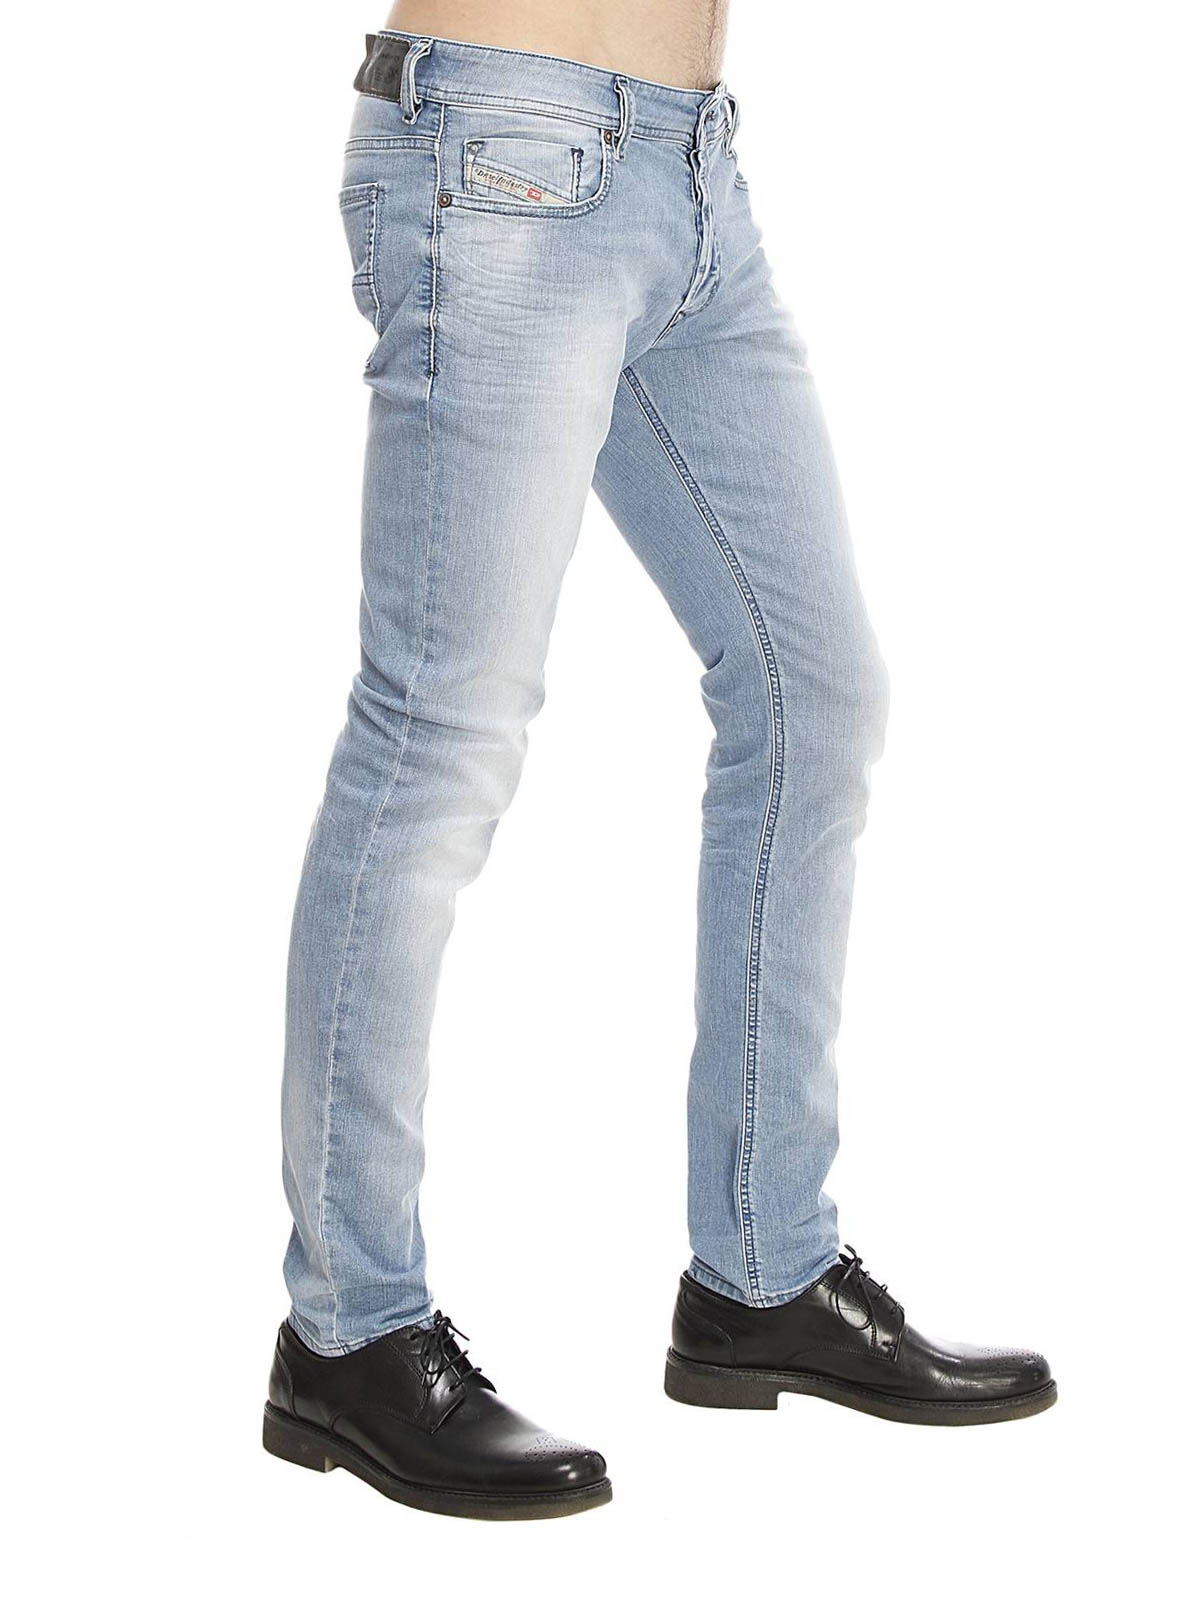 Botanist spijsvertering regenval Skinny jeans Diesel - Sleenker slim jeans - 00S7VG673E01 | iKRIX.com